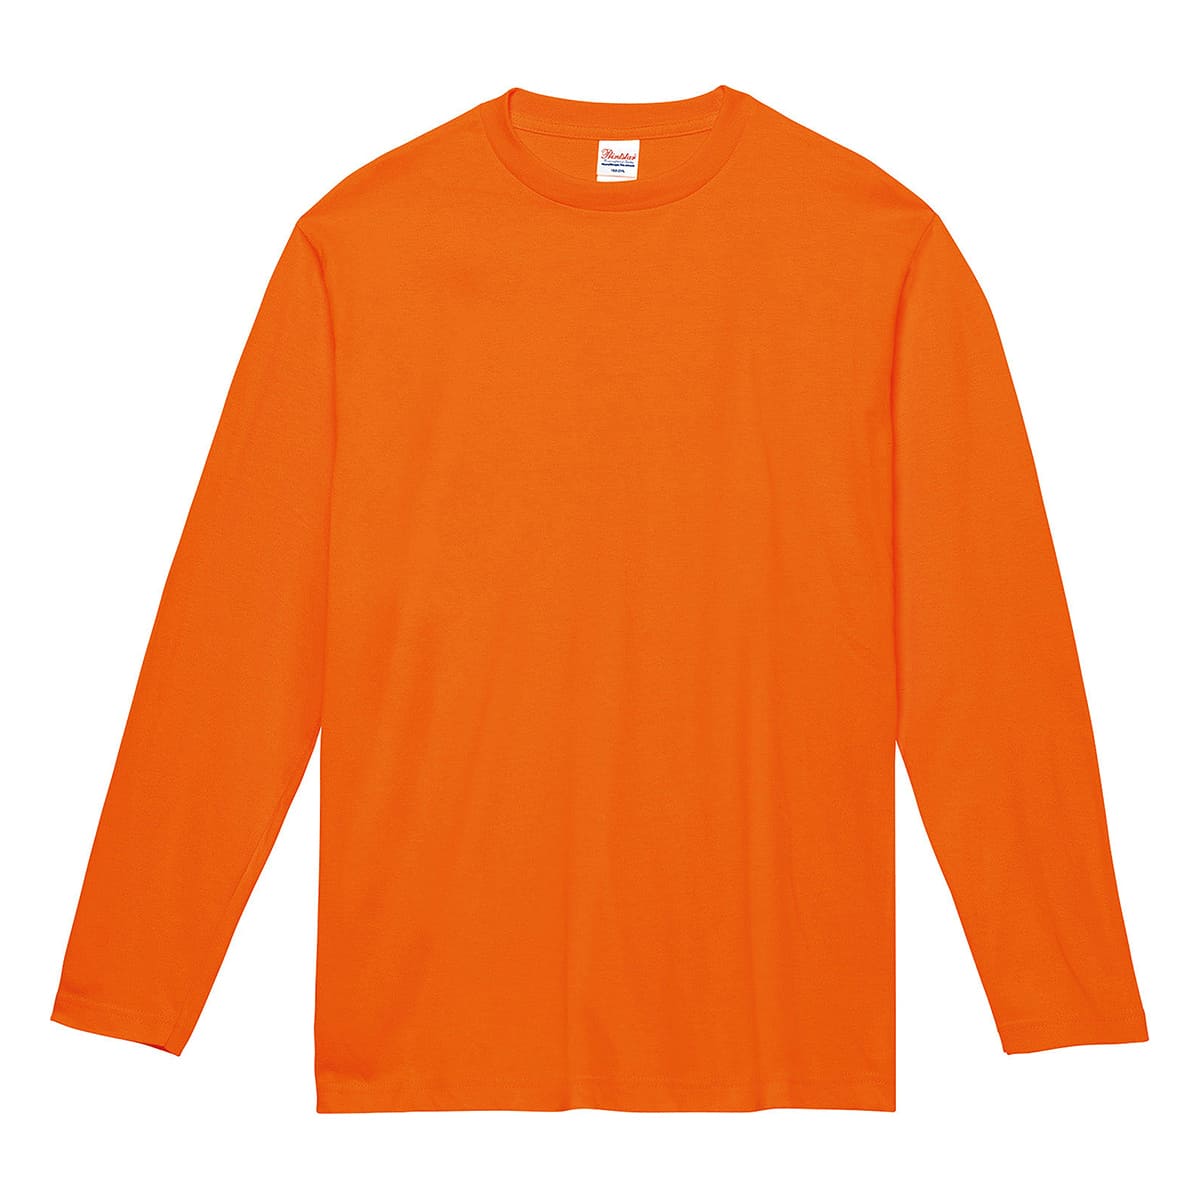 5.6オンス CVL ヘビーウェイト長袖Tシャツサイズ:150cm(オレンジ)